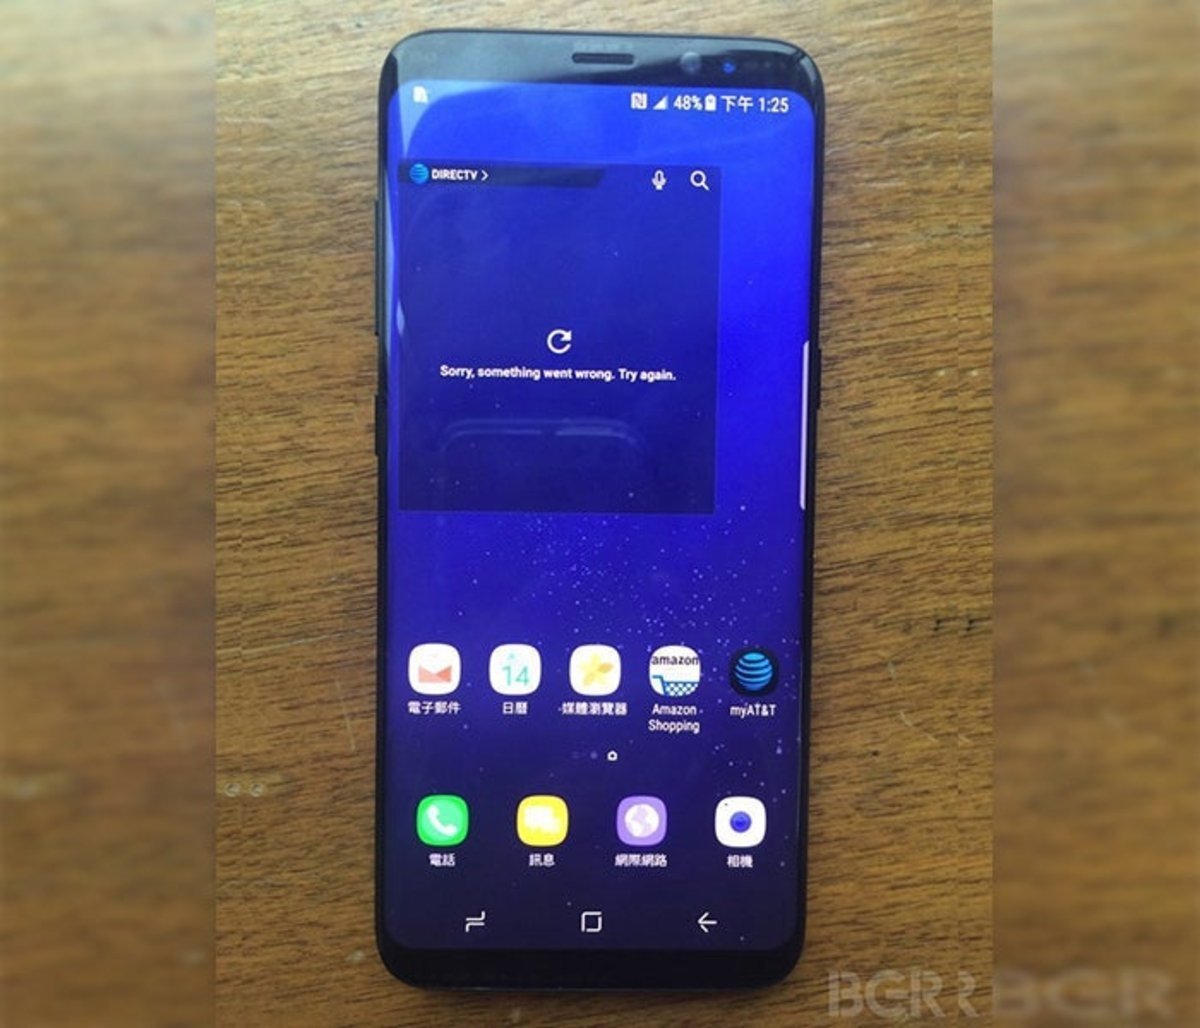 Samsung Galaxy S8, imagen real filtrada